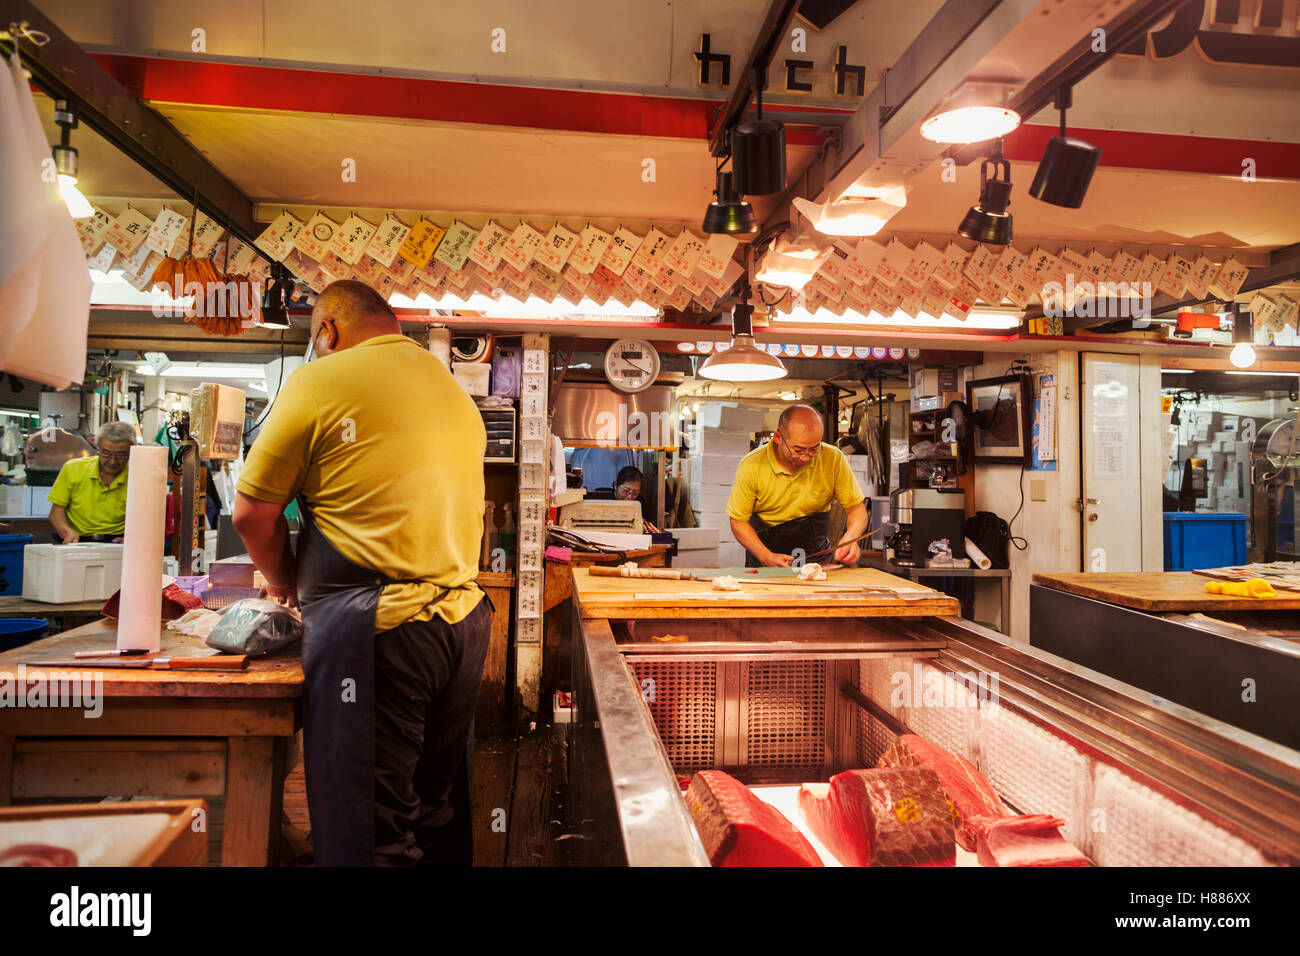 Un tradizionale mercato del pesce fresco in Tokyo. Un pescivendolo lavora la sfilettatura un grande pesce su una lastra. Persone in background. Foto Stock